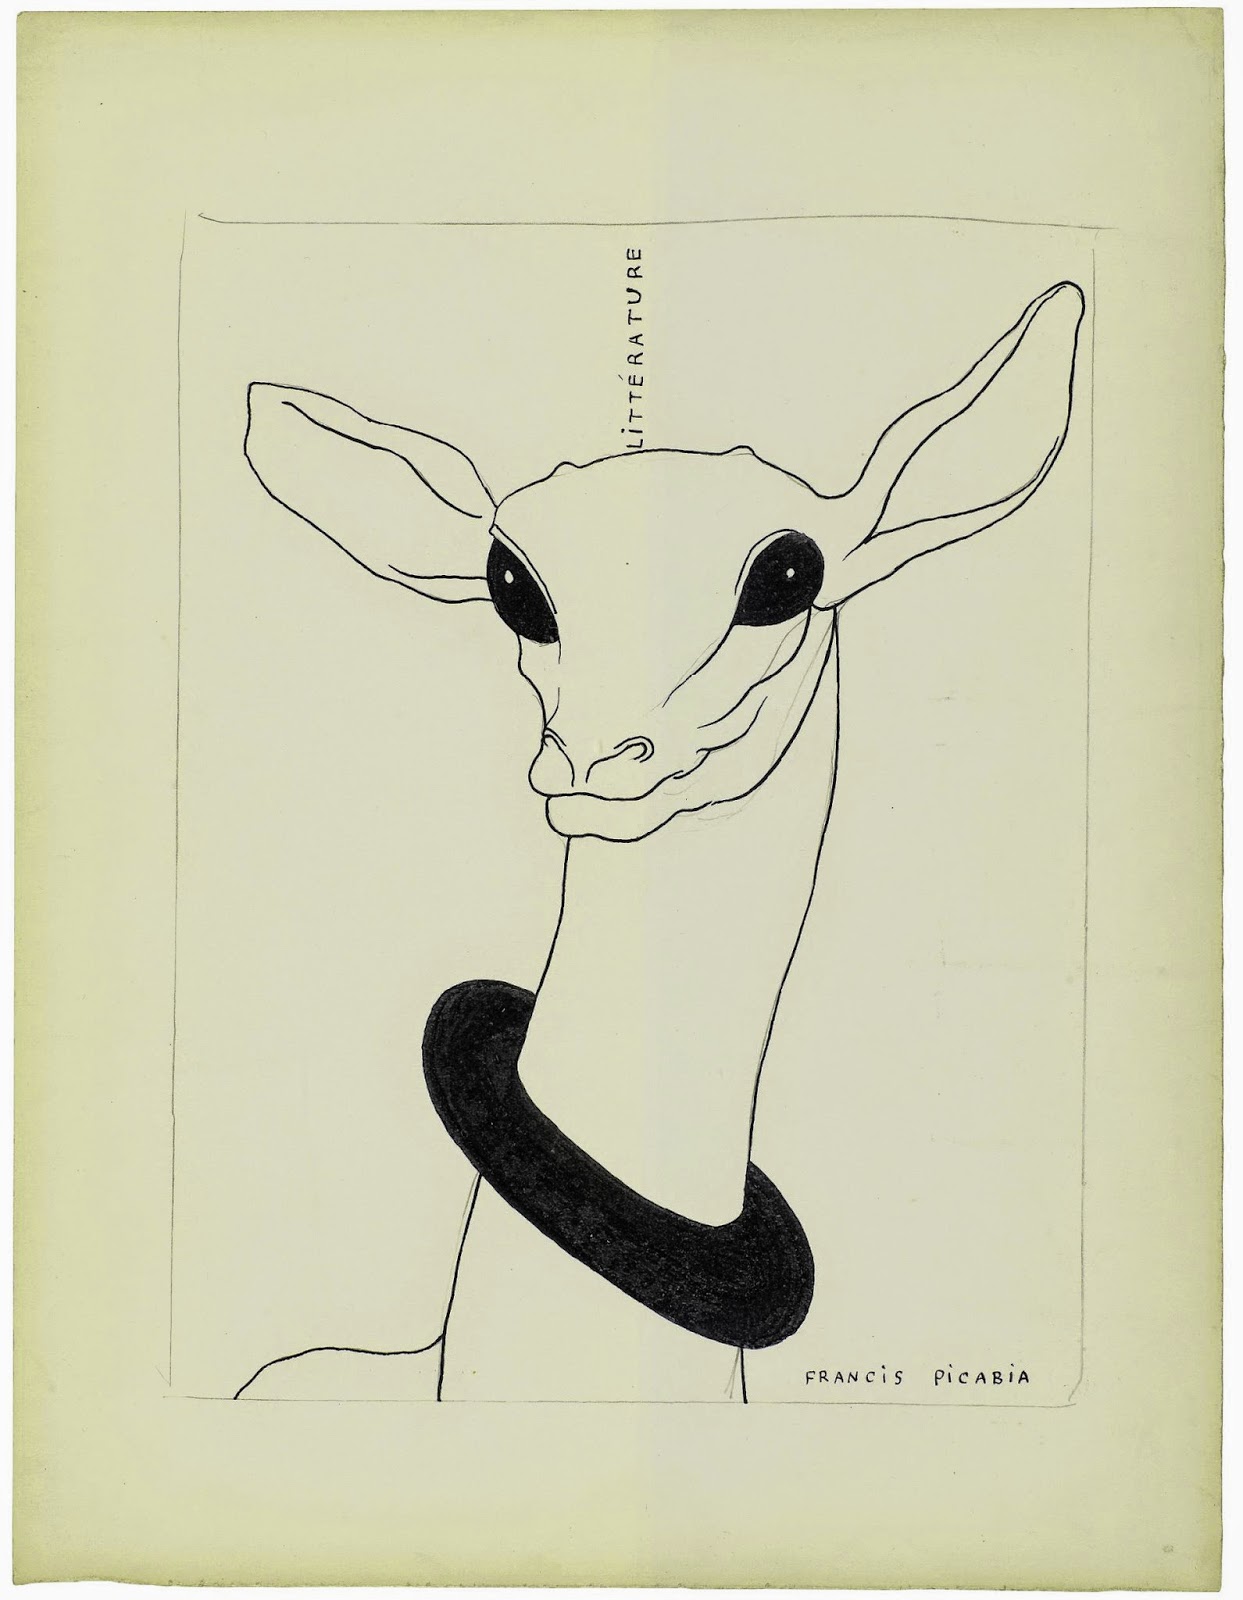 018. Picabia Projet de couverture Litt rature 1922 1924 